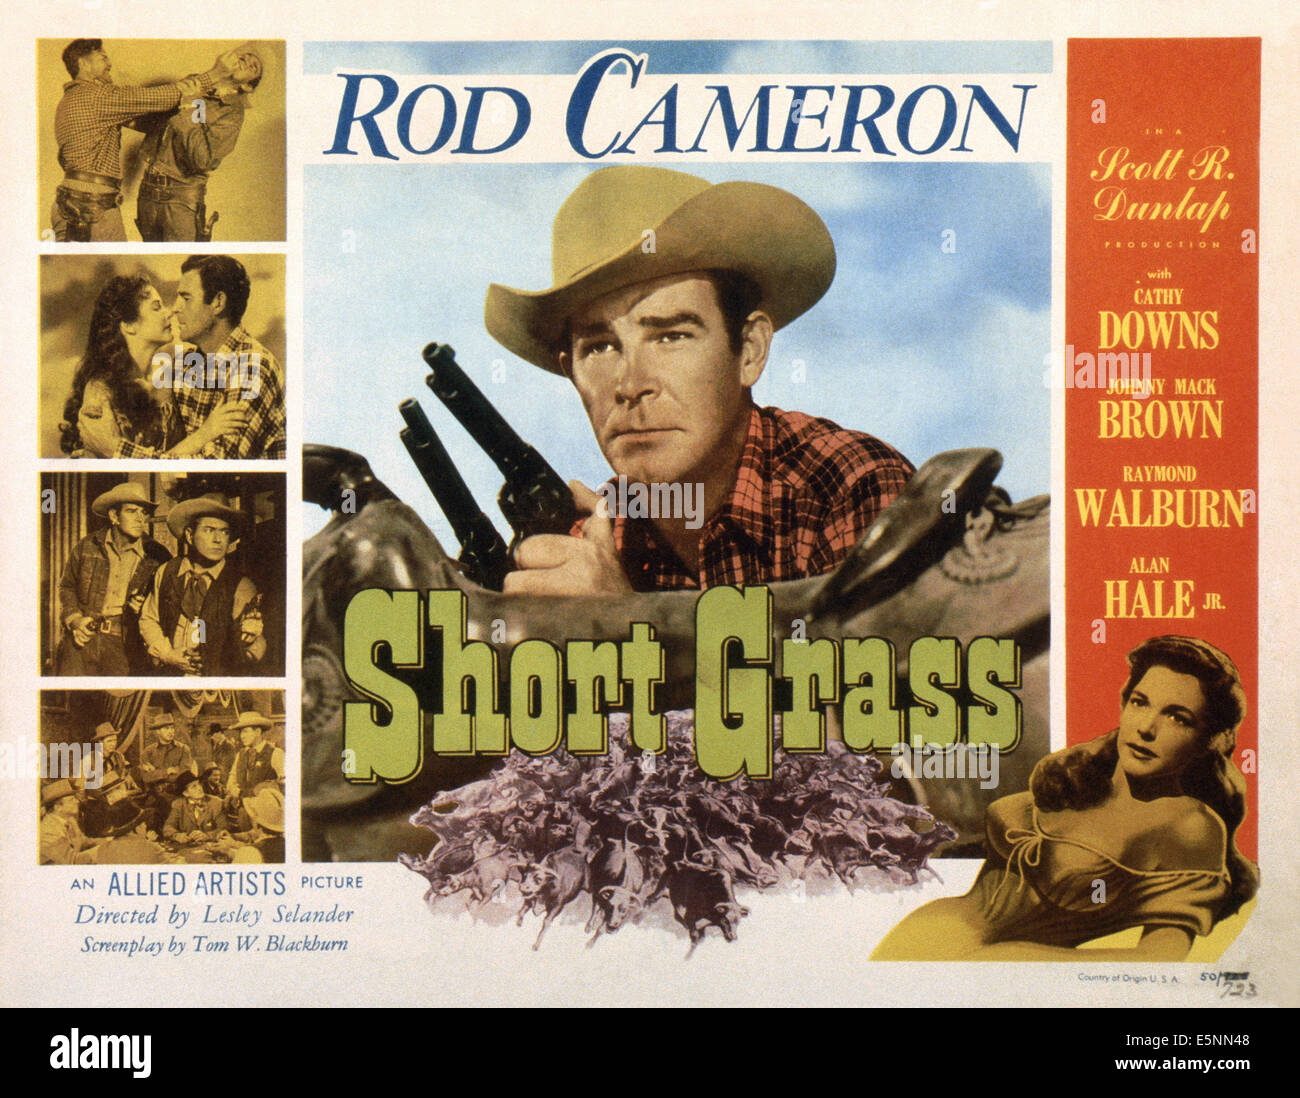 L'herbe courte, US lobbycard, Rod Cameron (centre), Cathy Downs (en bas à droite), 1950 Banque D'Images